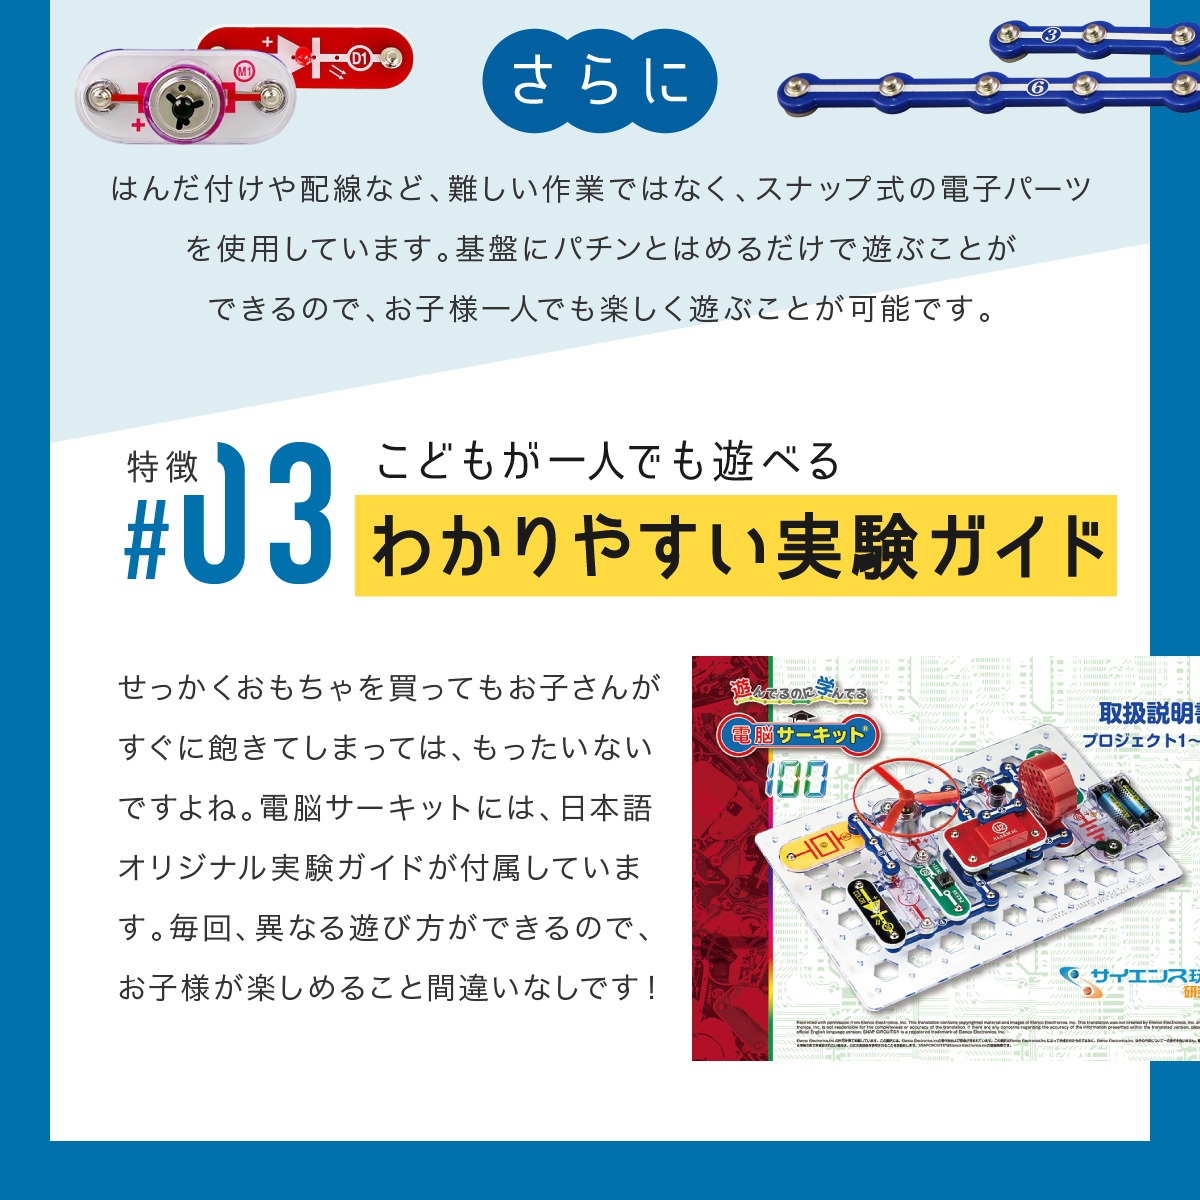 百貨店 電脳サーキット500 日本語実験ガイド付き 電気や電子回路の